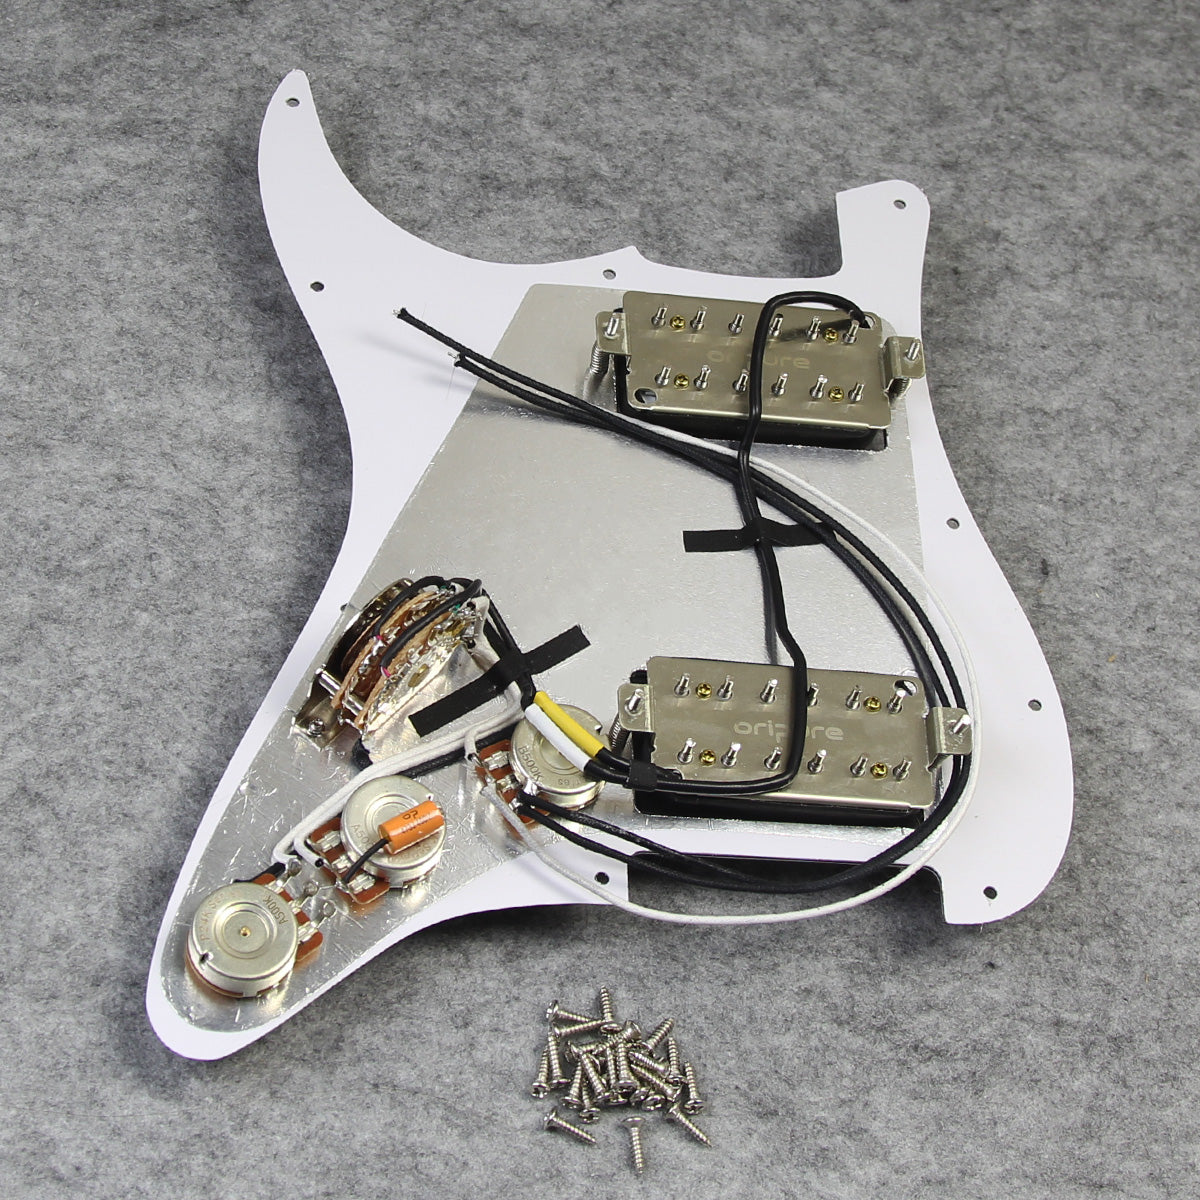 OriPure OLD-HH Alnico 5 HH Prewired Guitar Pickguard | iknmusic